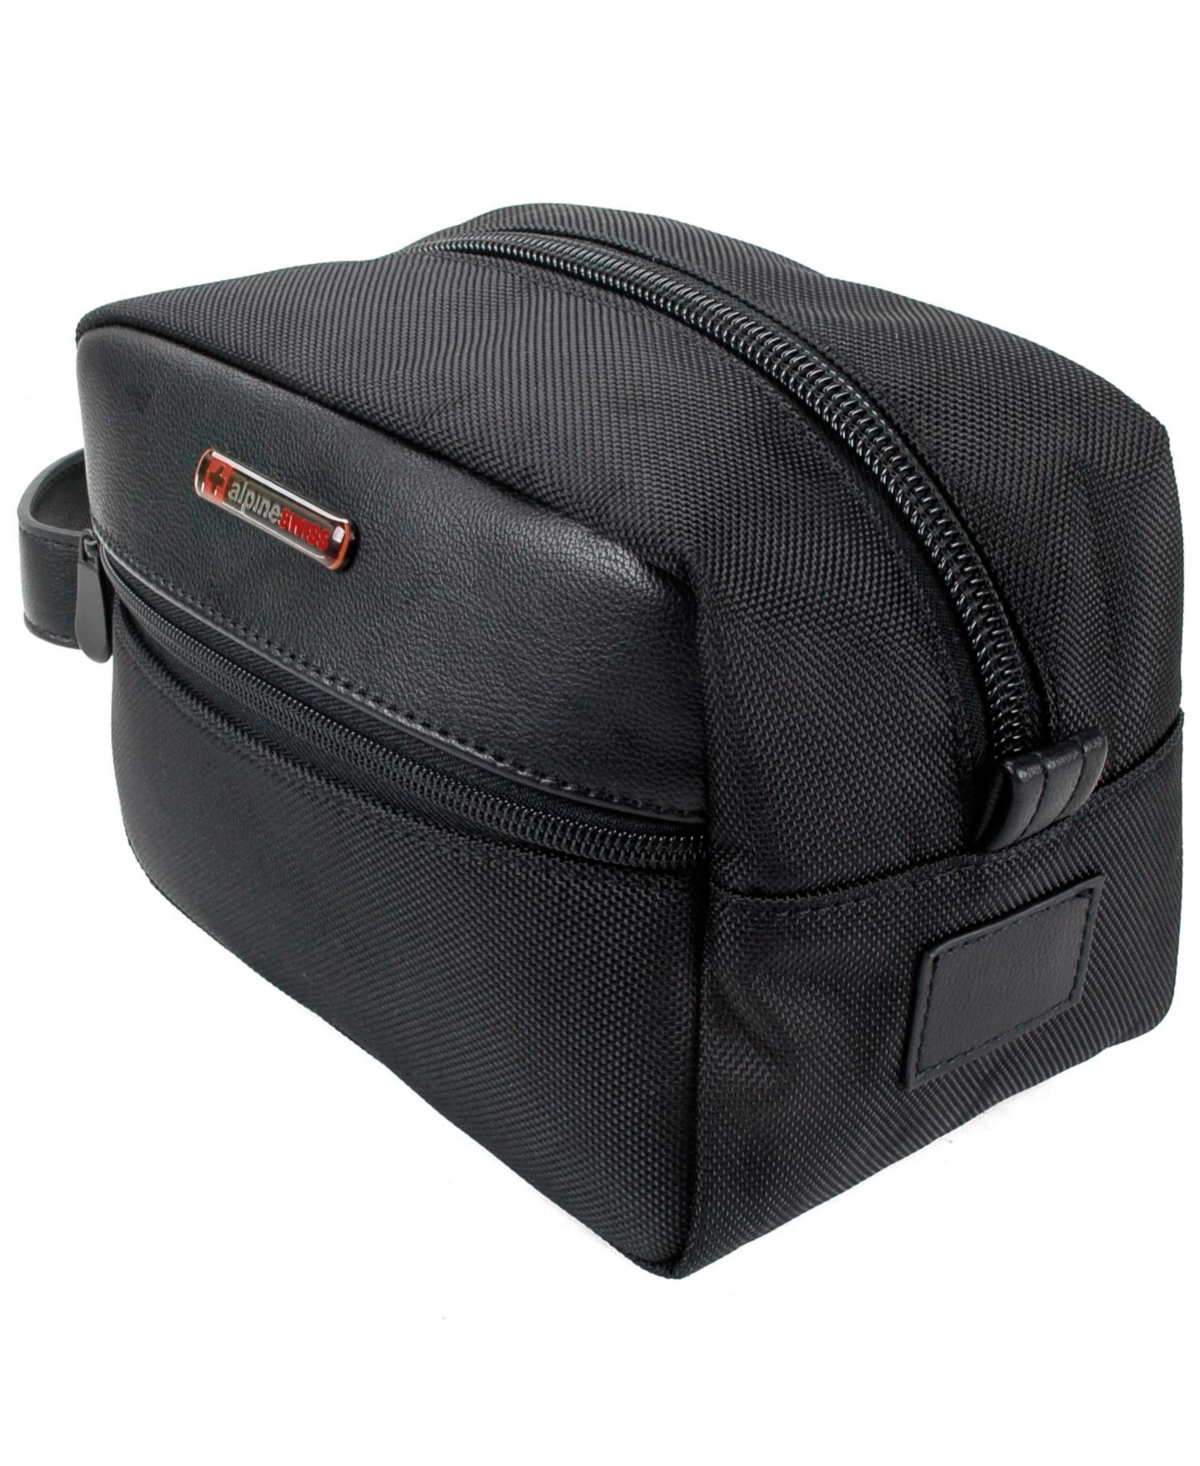 Hudson Shaving Kit Dopp Kit Overnight Toiletry Bag Travel Case New - Black